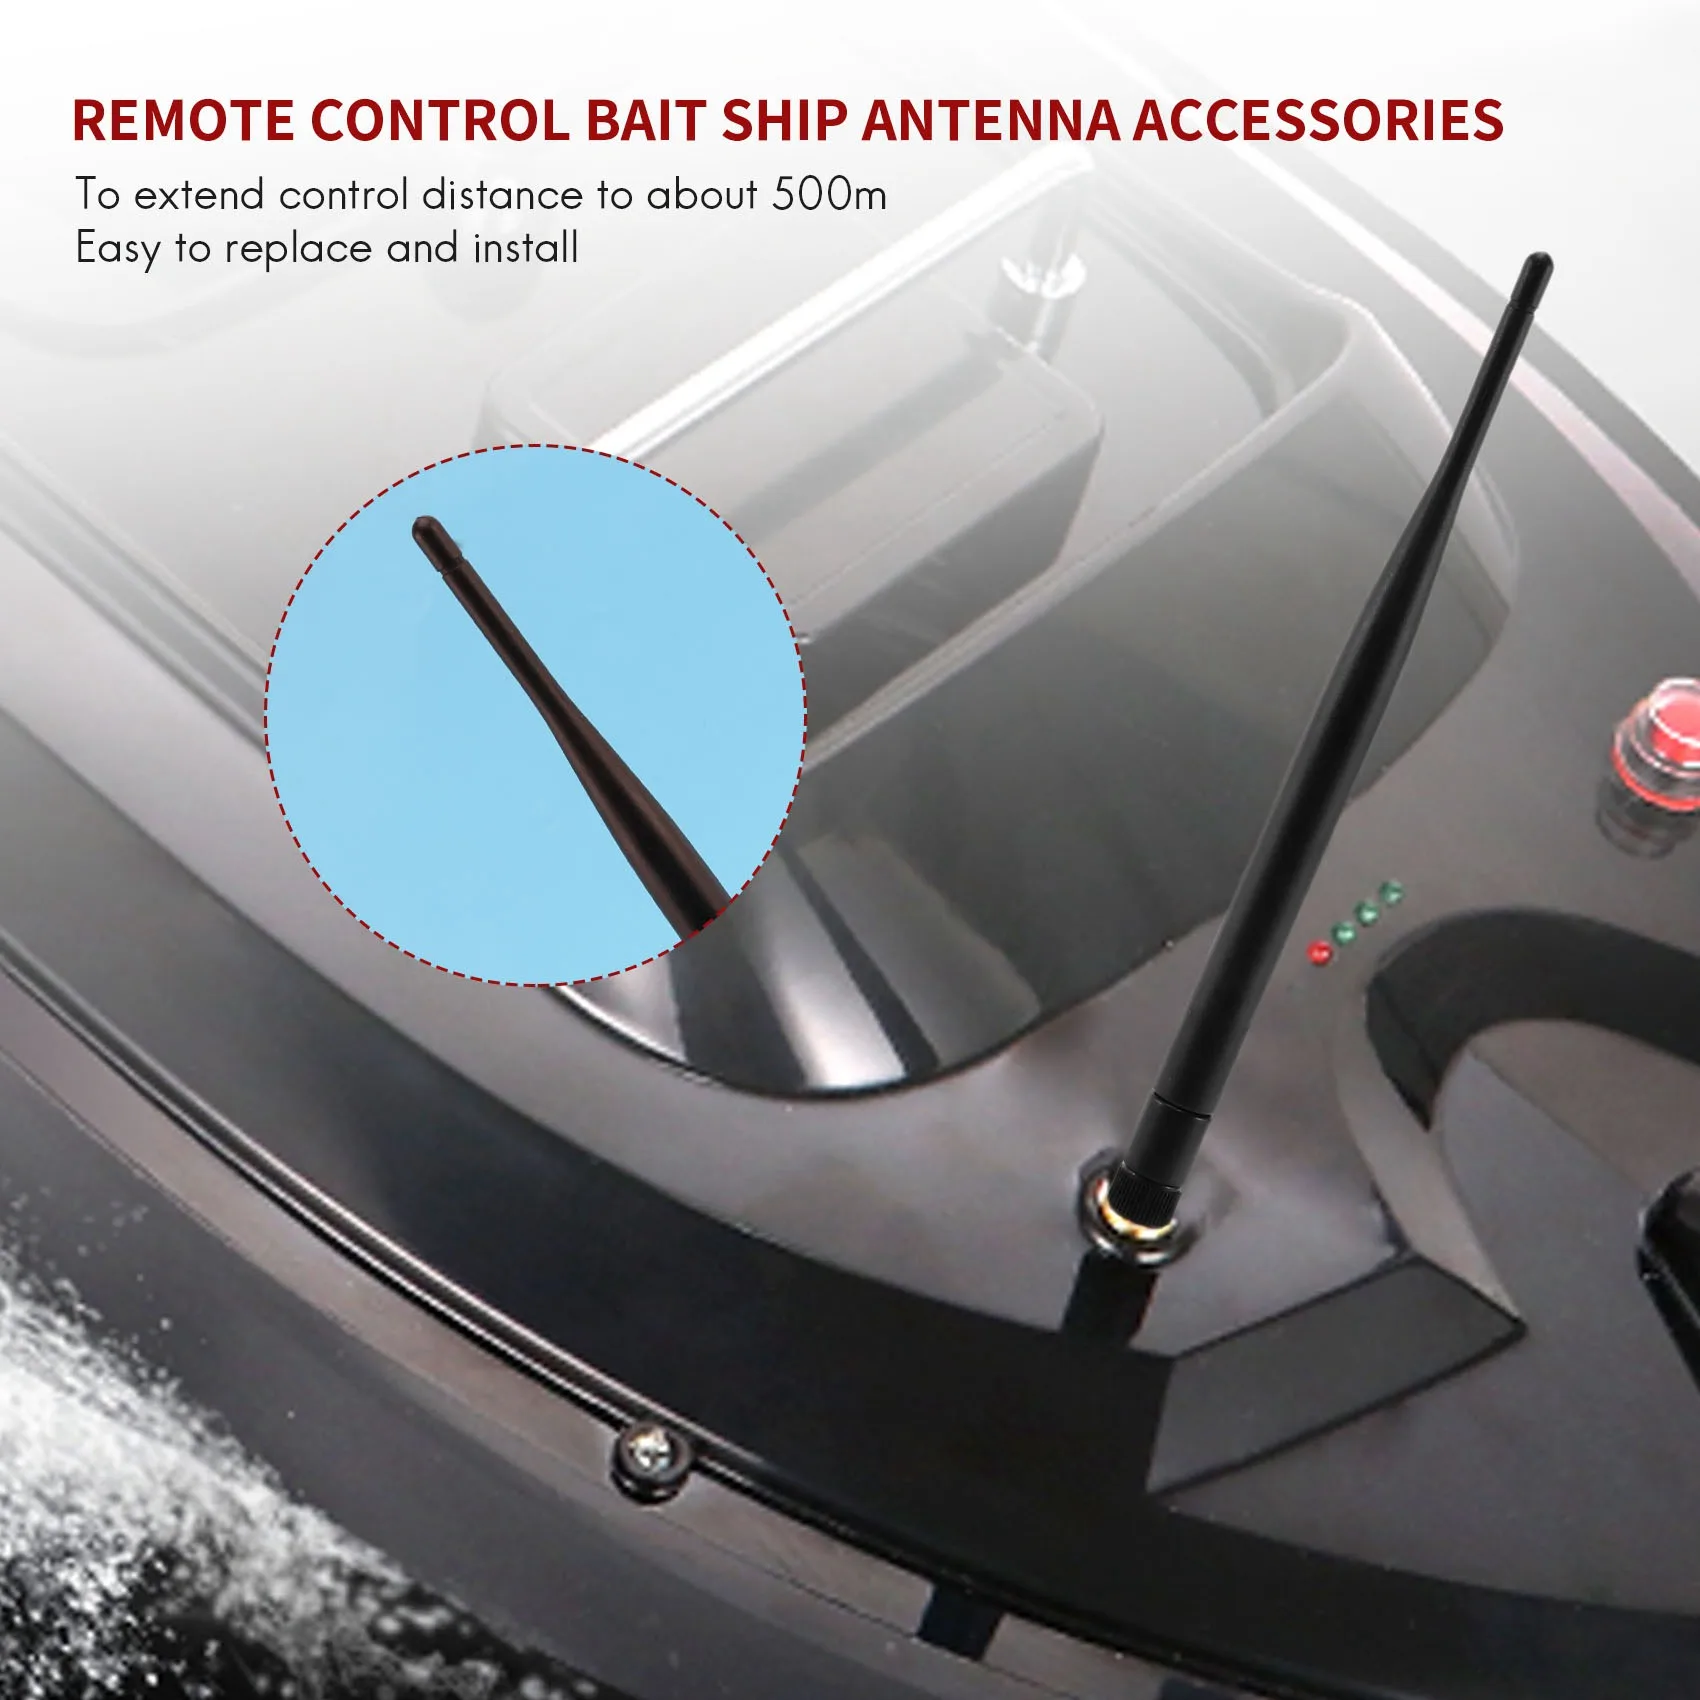 

Антенна для лодки с дистанционным управлением для Flytec 2011-5 1,5 кг